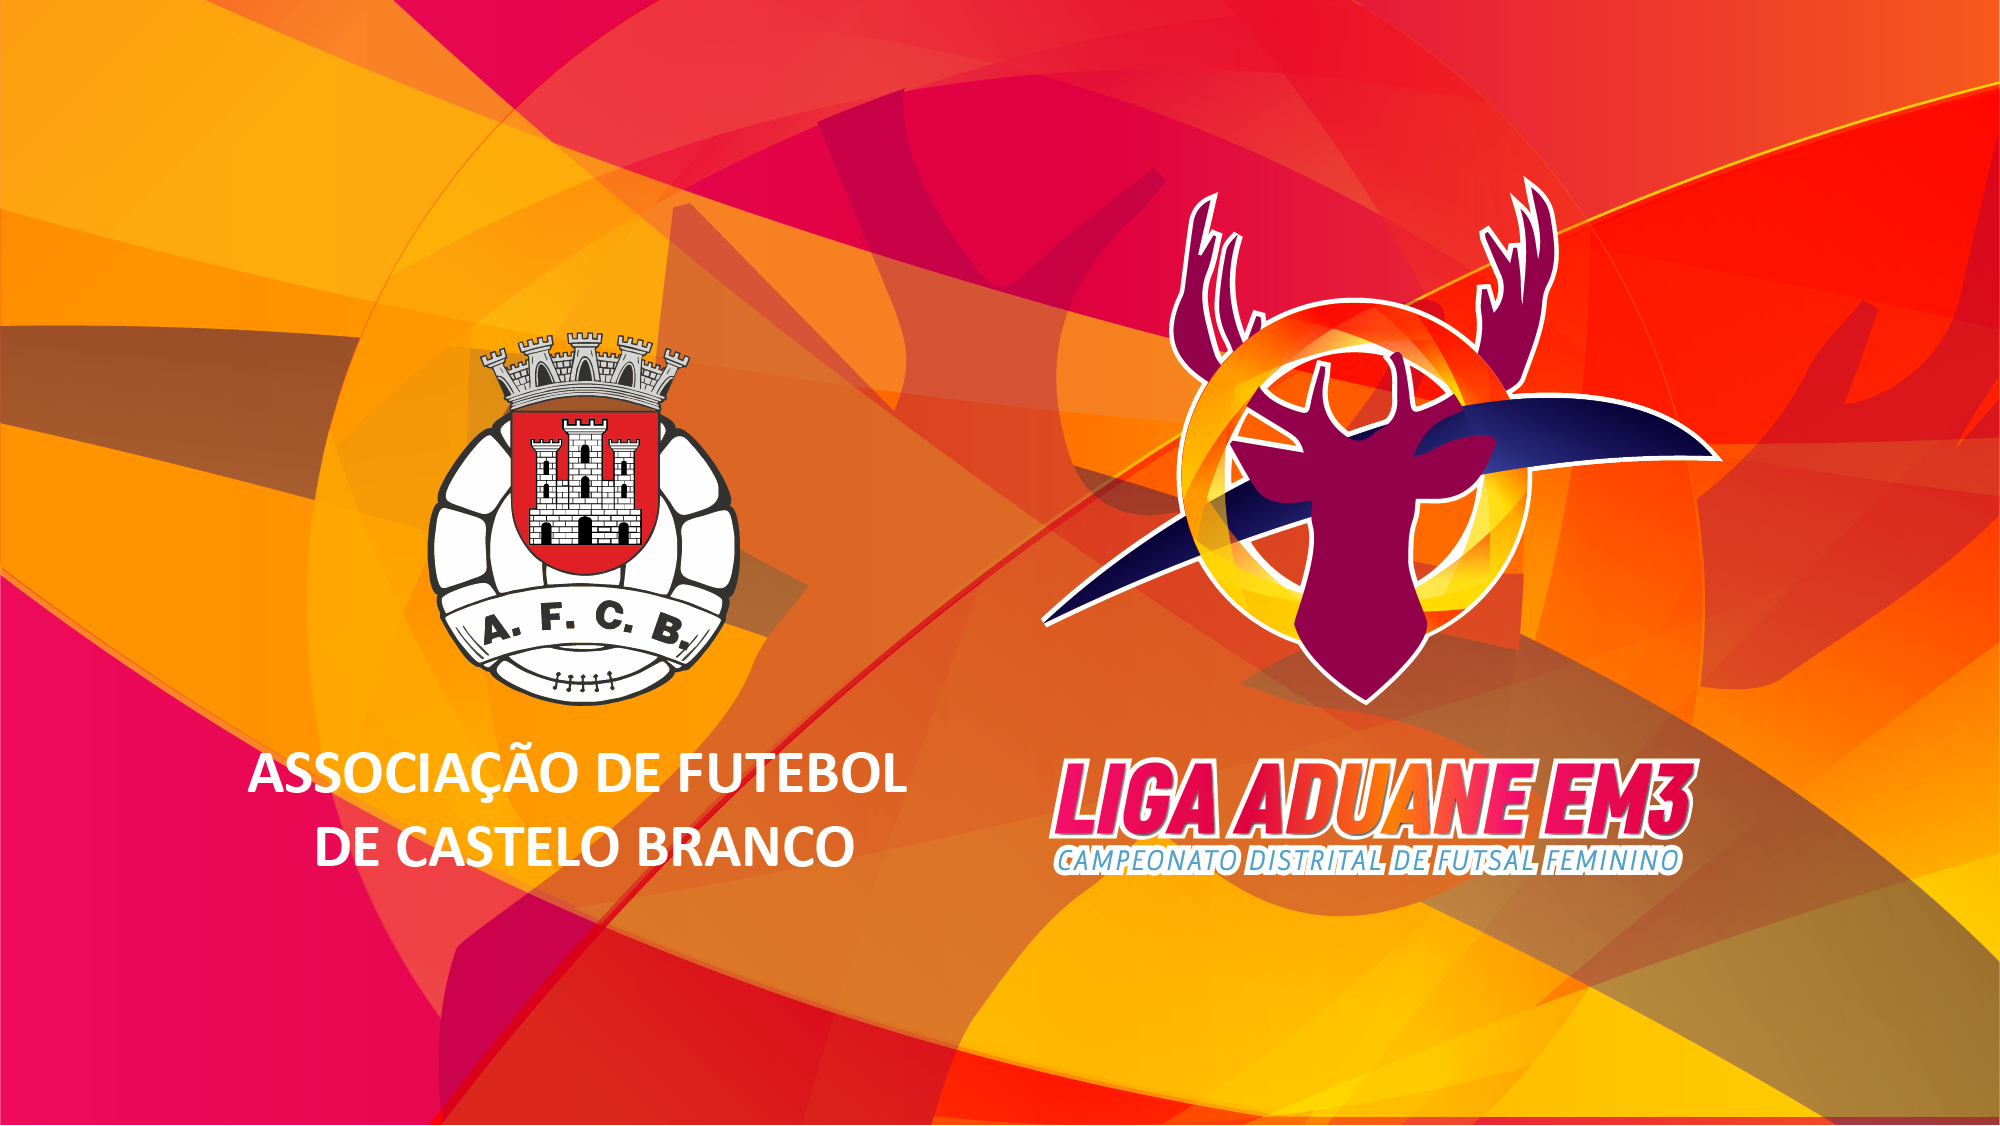 Campeonato Distrital de Futsal Feminino da AFCB é “Liga Aduane EM3”